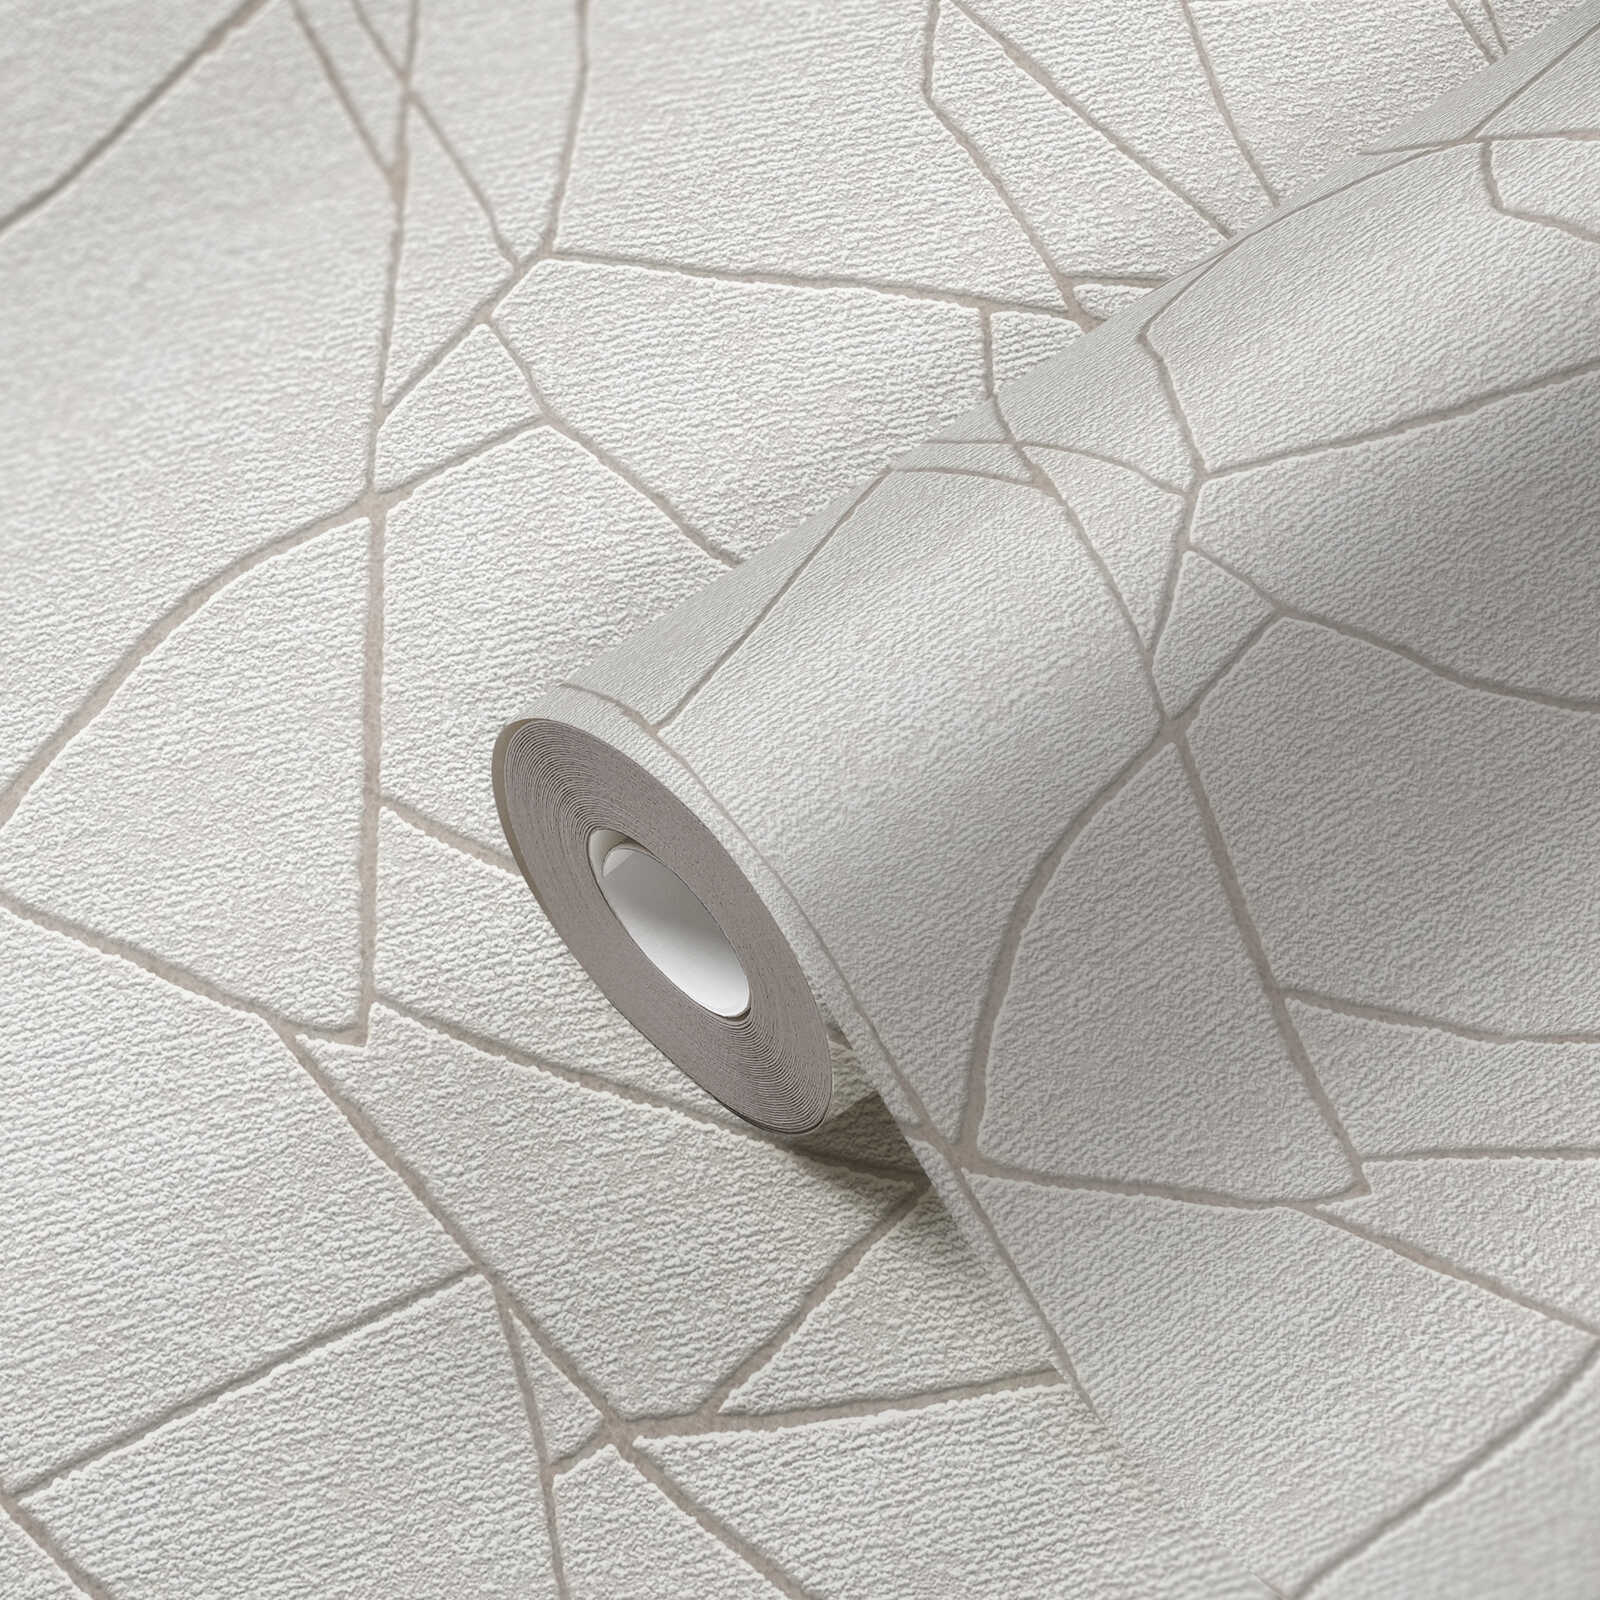             Vliesbehang met grafisch 3D natuurmotief - grijs, wit
        